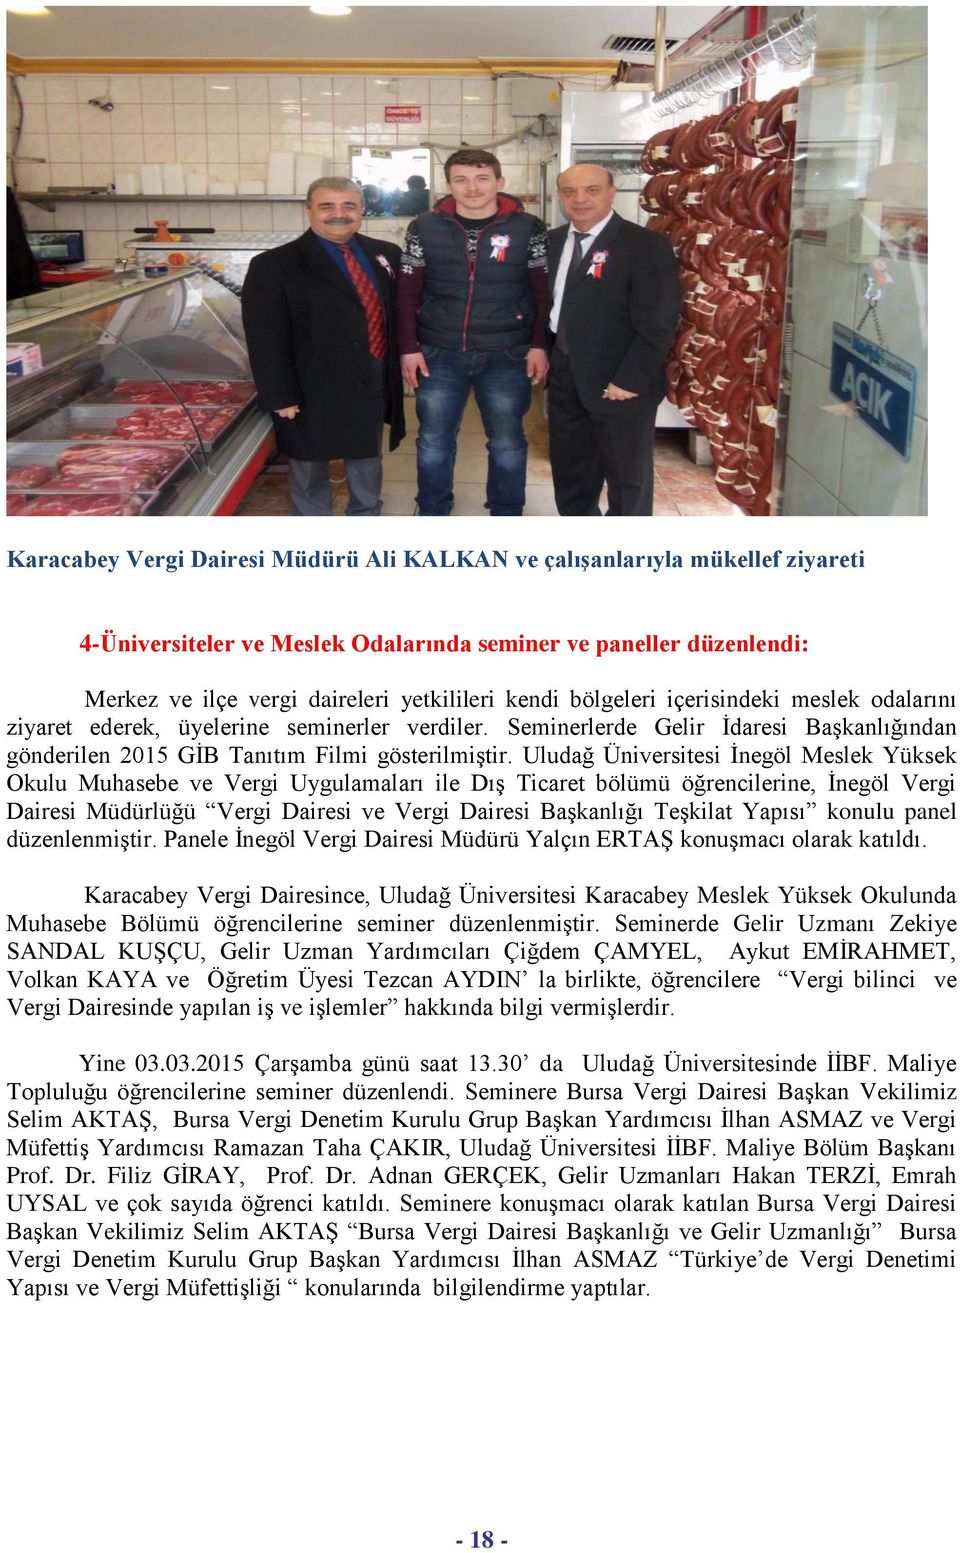 Uludağ Üniversitesi İnegöl Meslek Yüksek Okulu Muhasebe ve Vergi Uygulamaları ile Dış Ticaret bölümü öğrencilerine, İnegöl Vergi Dairesi Müdürlüğü Vergi Dairesi ve Vergi Dairesi Başkanlığı Teşkilat